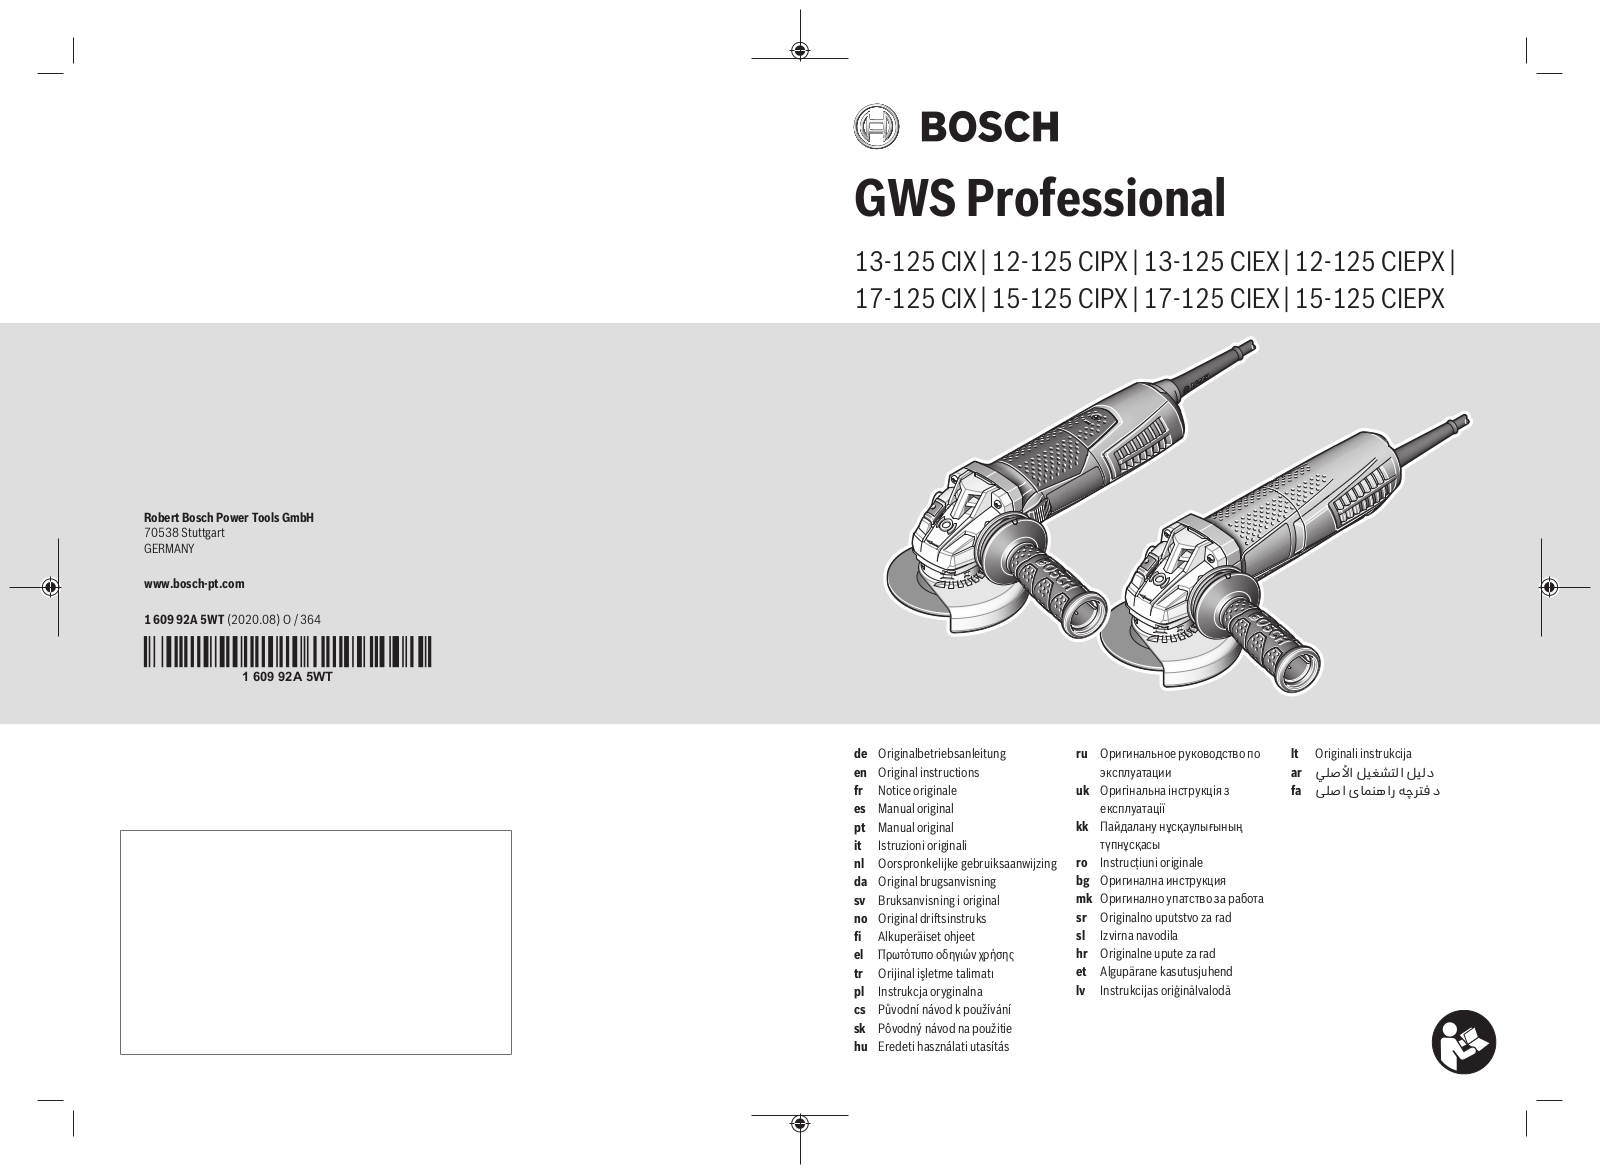 Bosch GWS 12-125 CIEPX, GWS 17-125 CIX, GWS 12-125 CIPX, GWS 13-125 CIX, GWS 15-125 CIPX User Manual